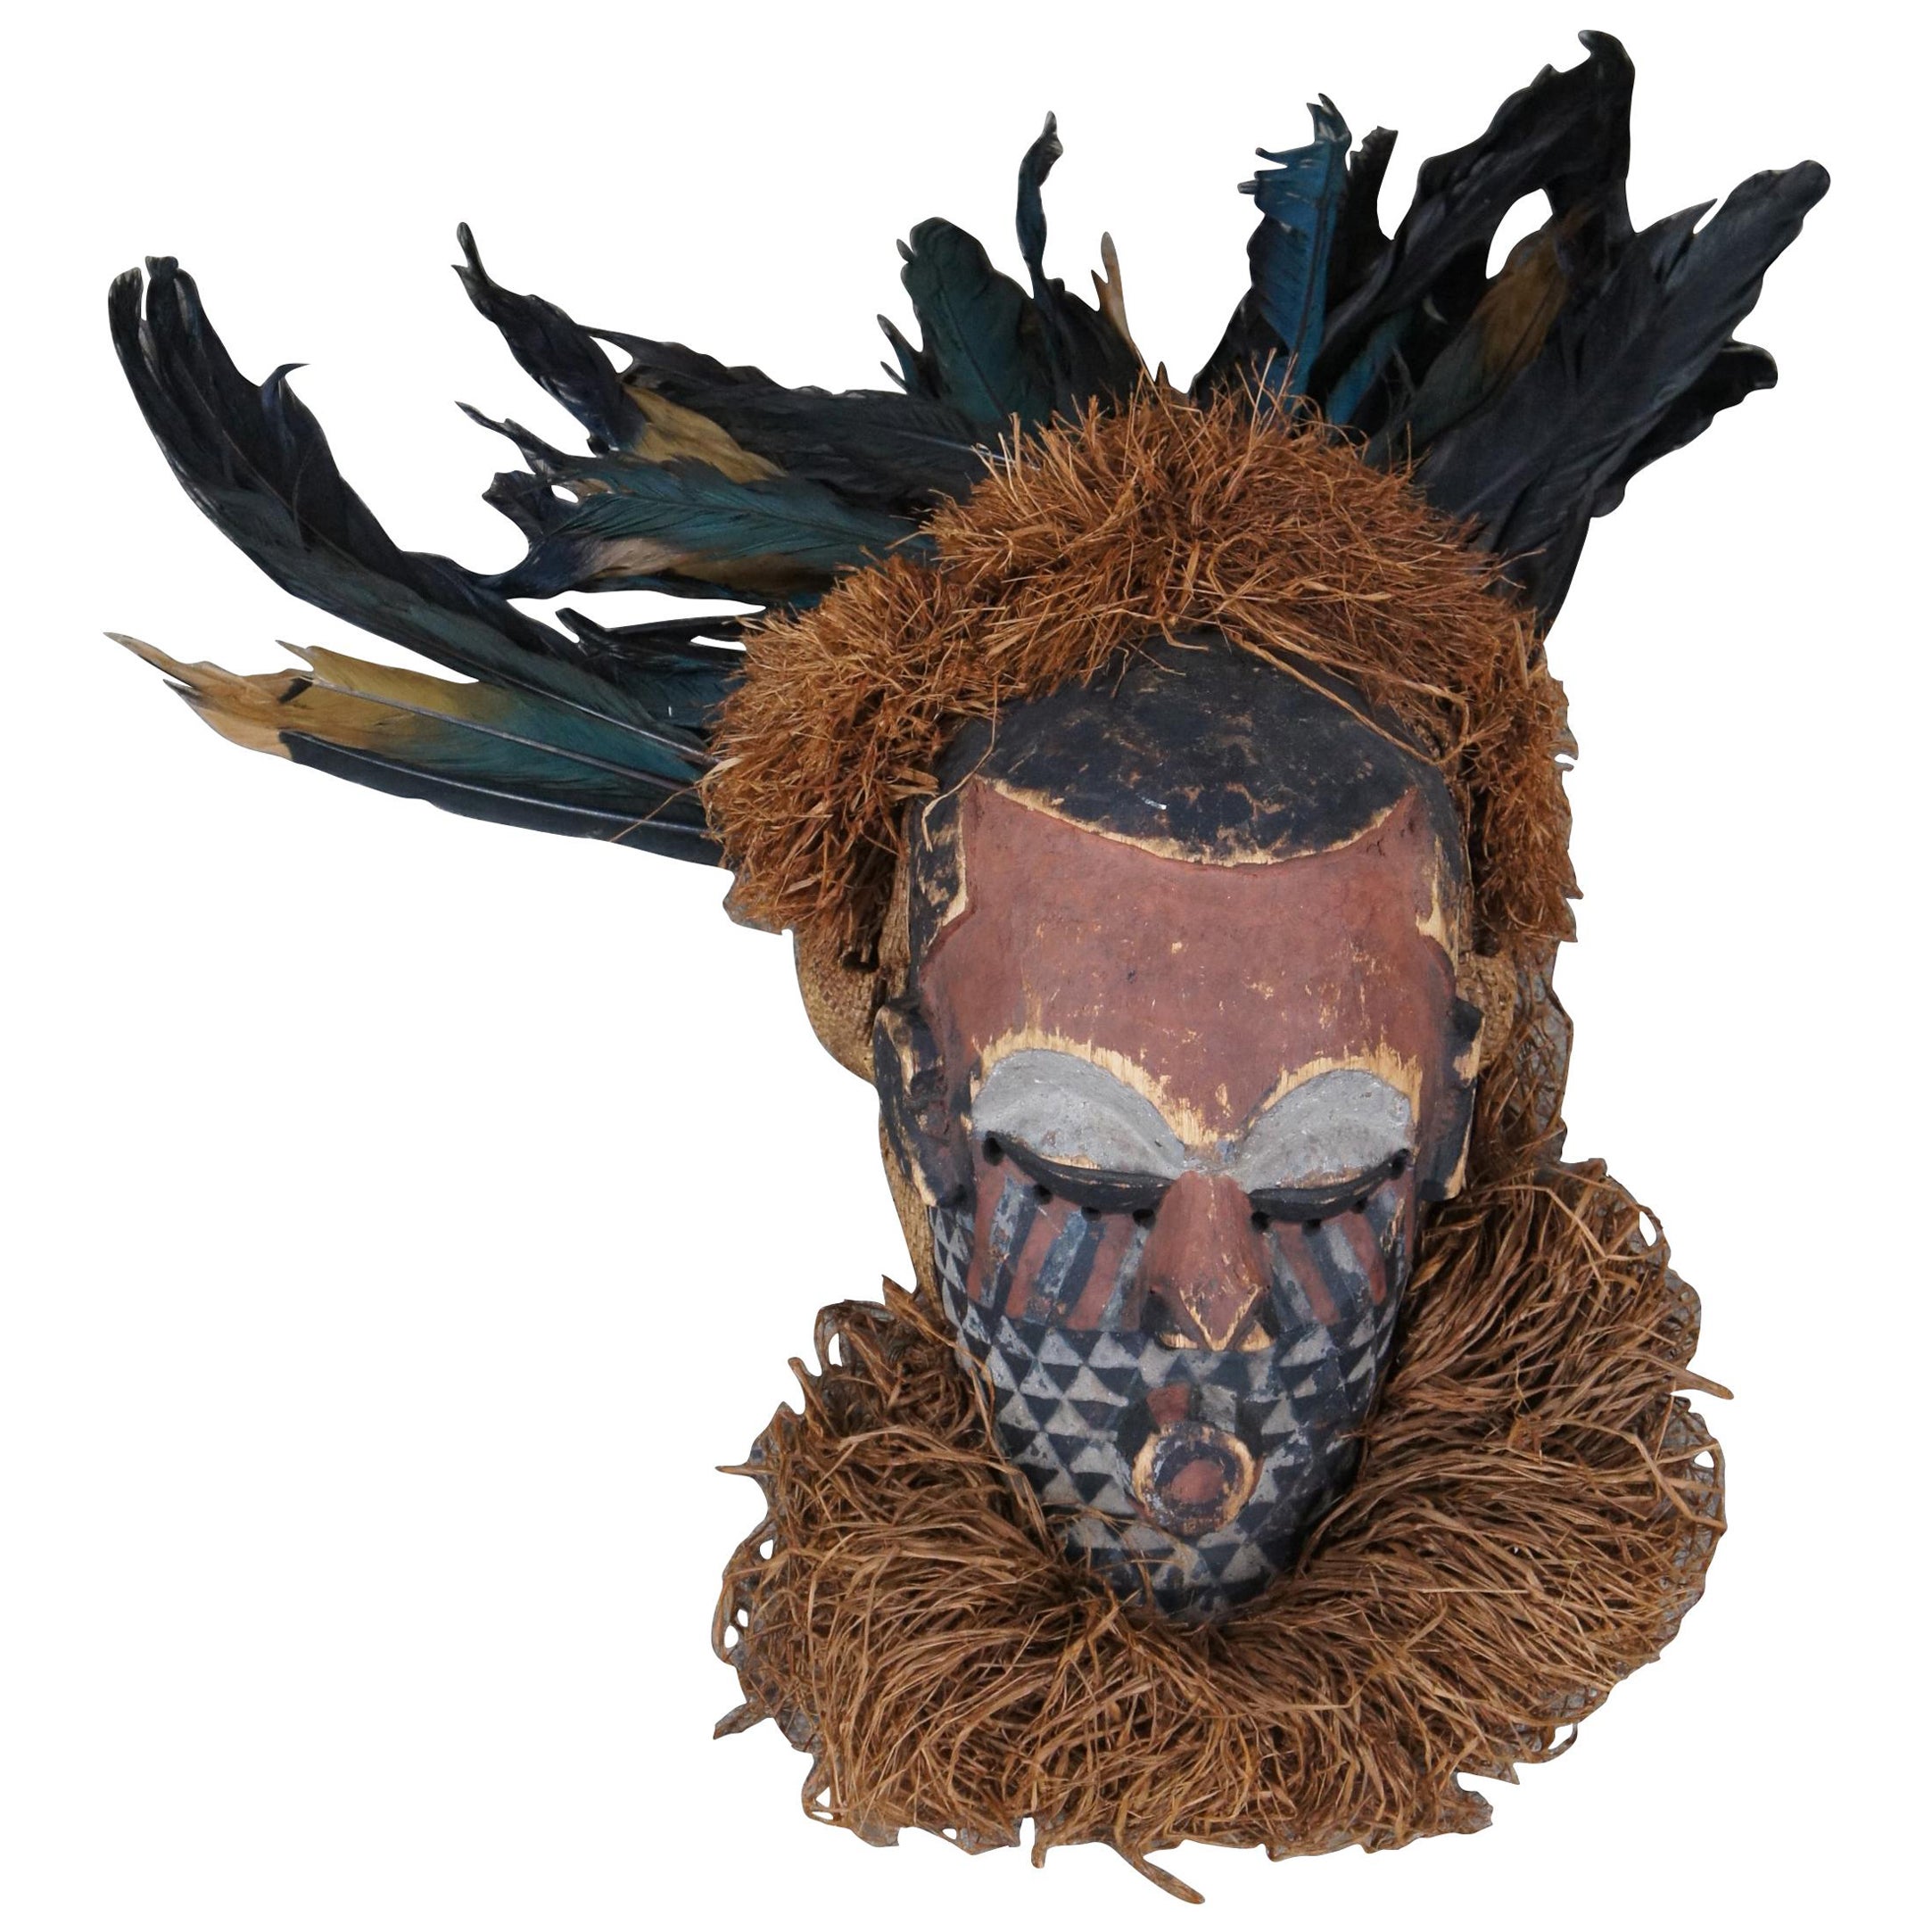 Zentralafrikanische zeremonielle Bakuba-Maske des 20. Jahrhunderts Bushongo 24"